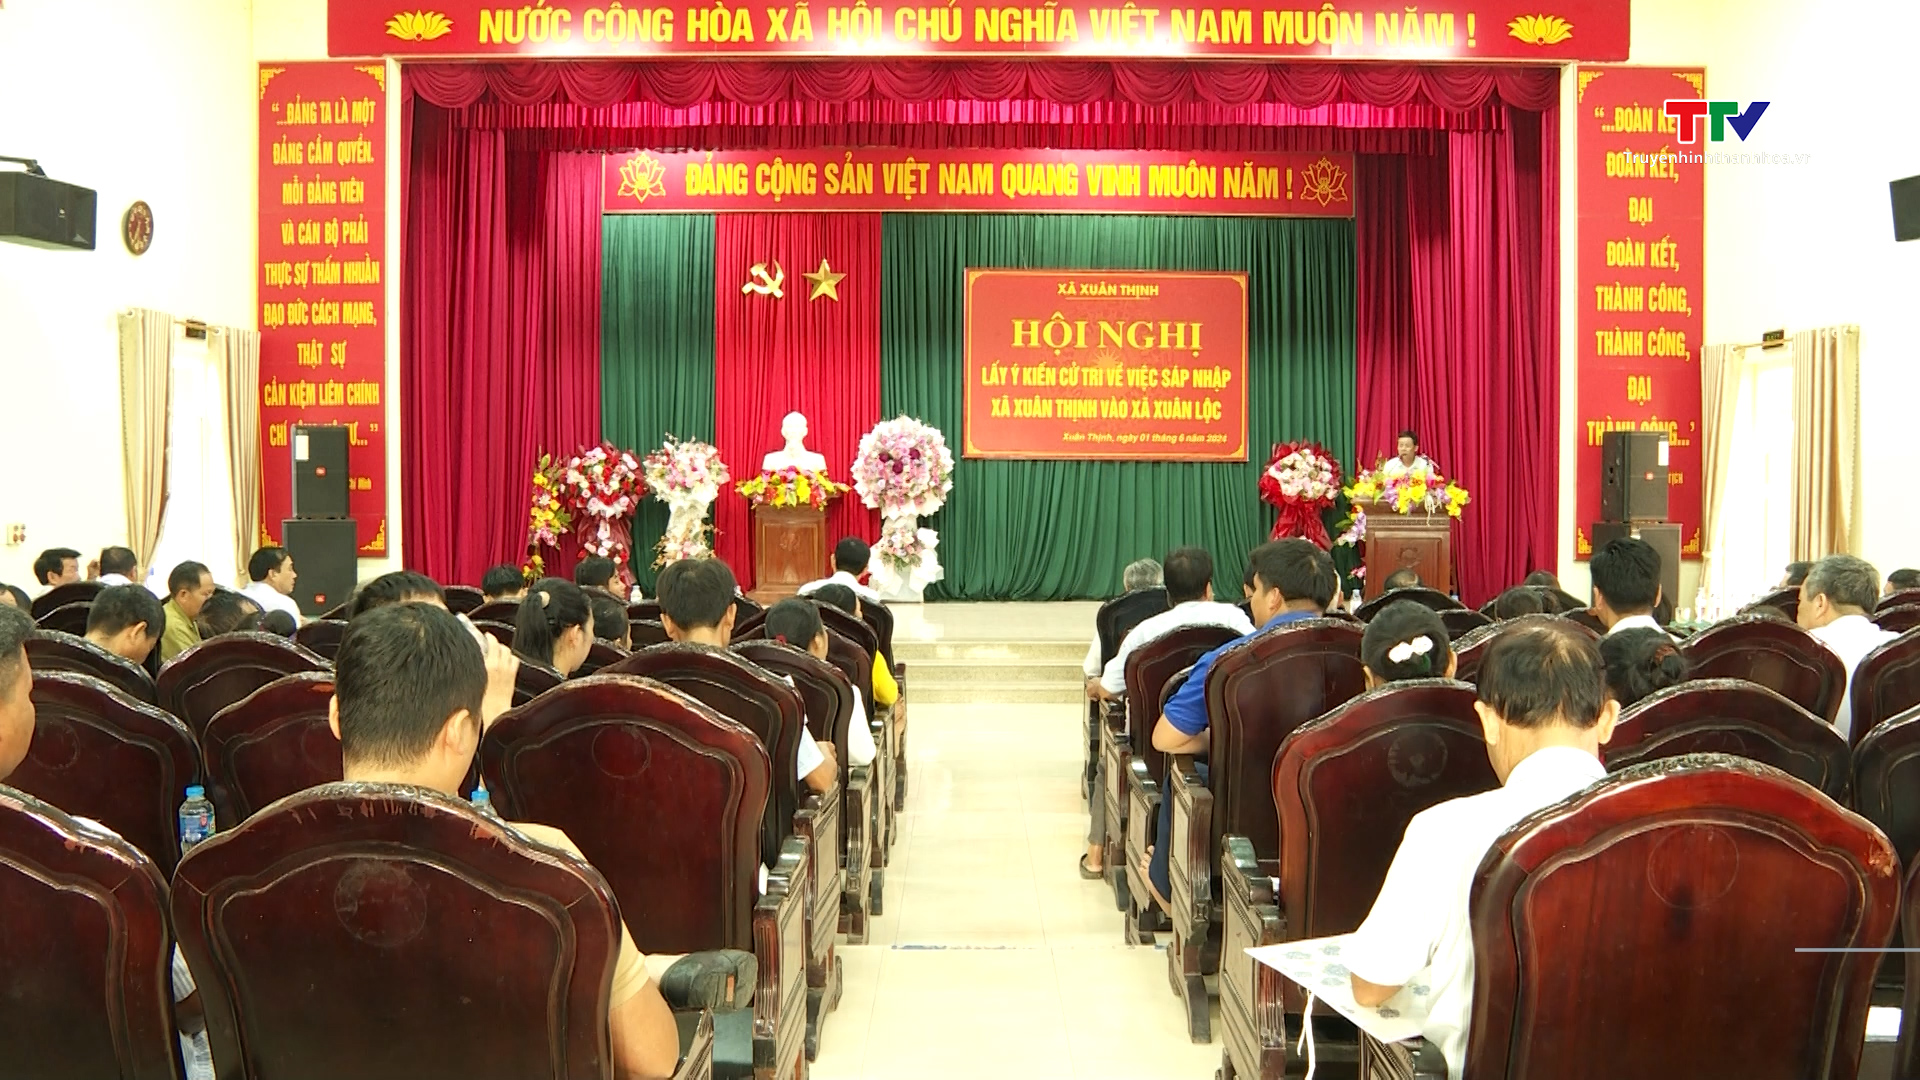 Huyện Triệu Sơn lấy ý kiến cử tri về sáp nhập xã Thọ Vực vào xã Thọ Phú, xã Xuân Thịnh vào xã Xuân Lộc- Ảnh 1.